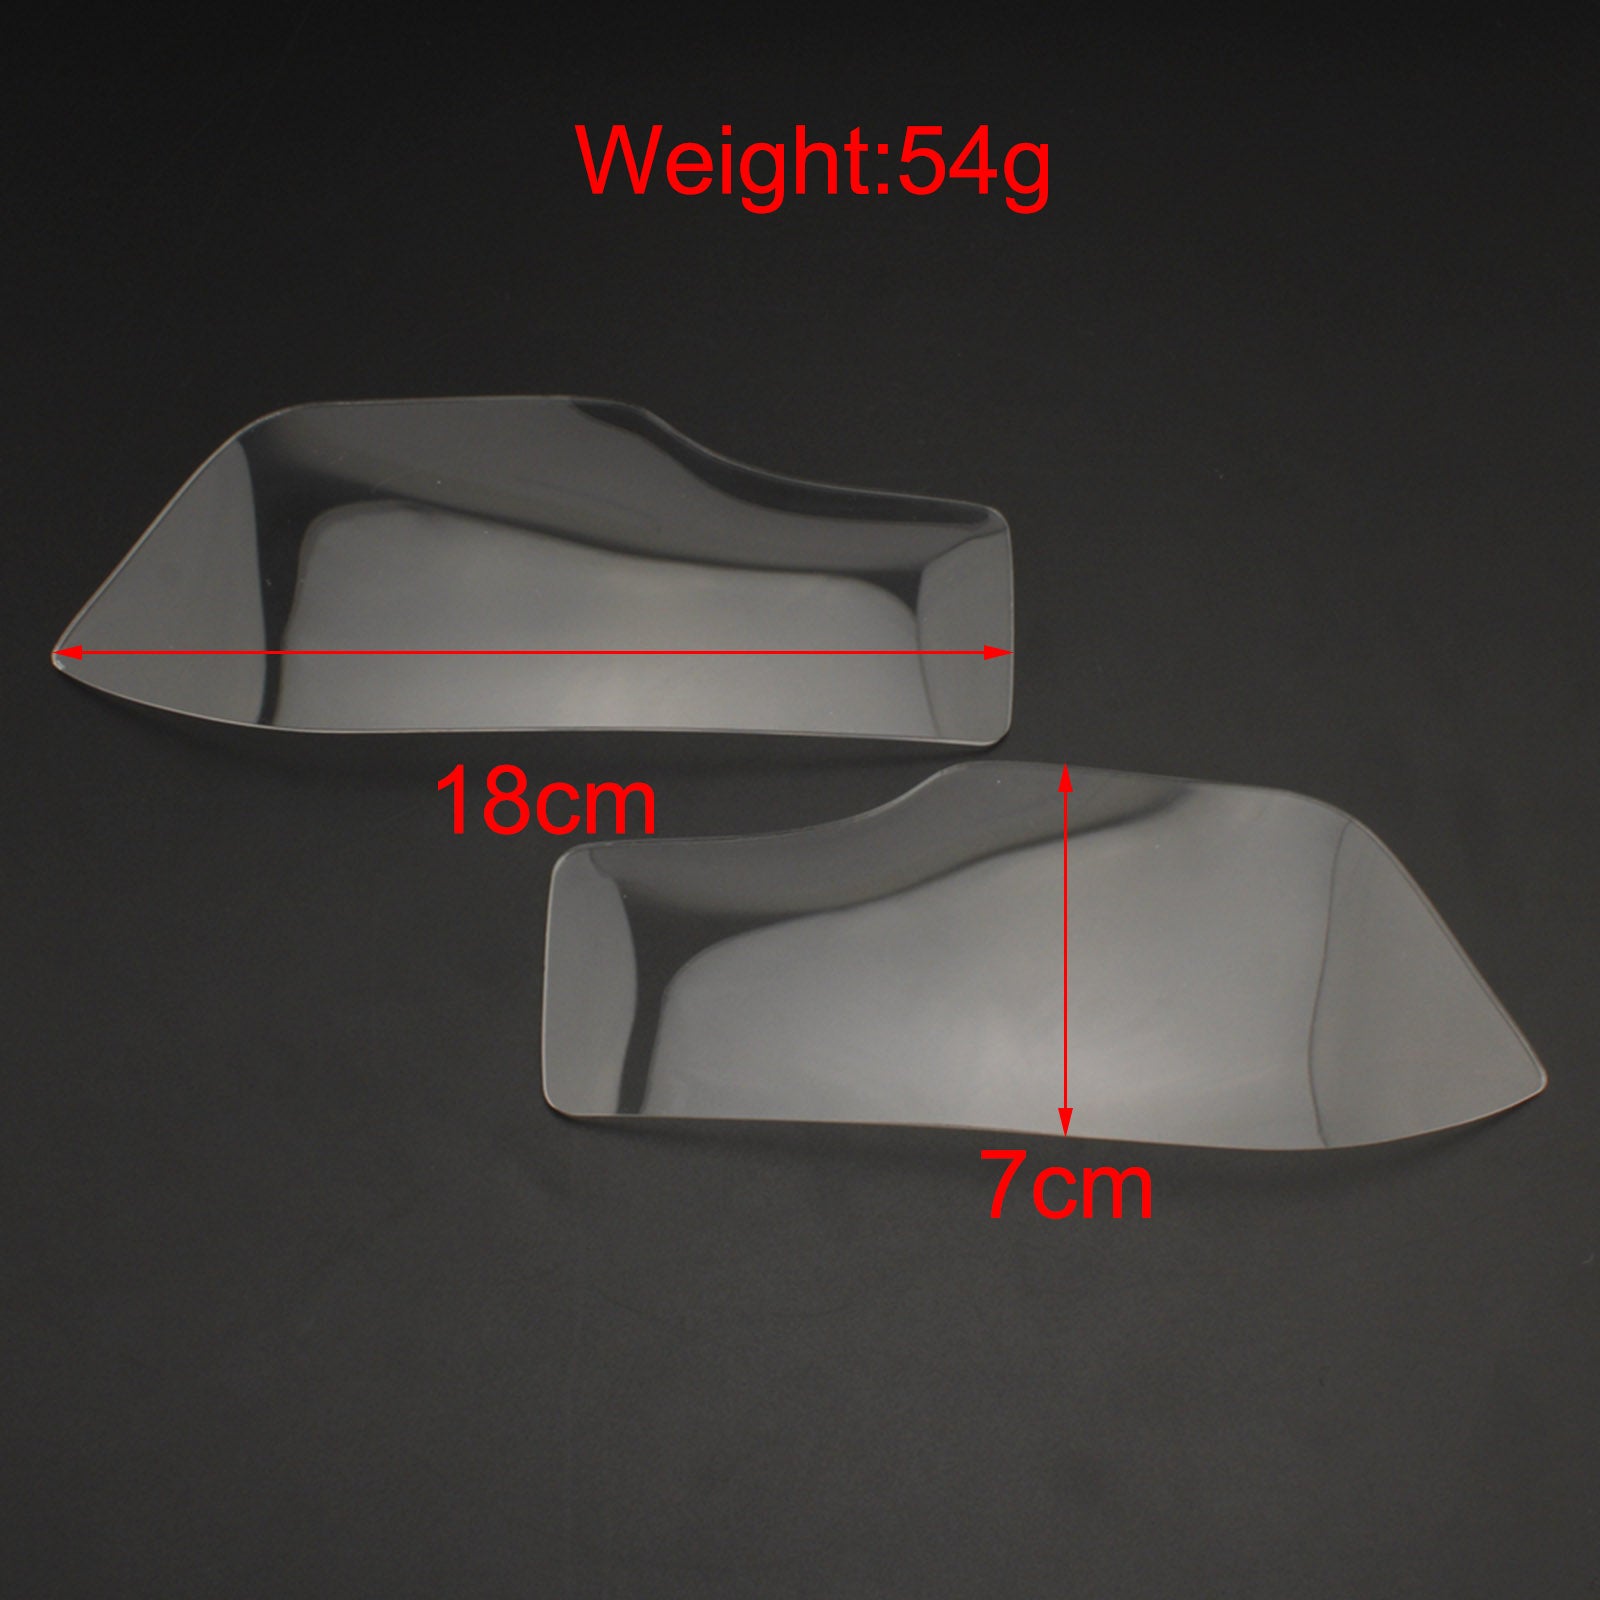 Protezione lente lampada anteriore lente faro adatta per Honda Adv 150 2019-2020 fumo generico